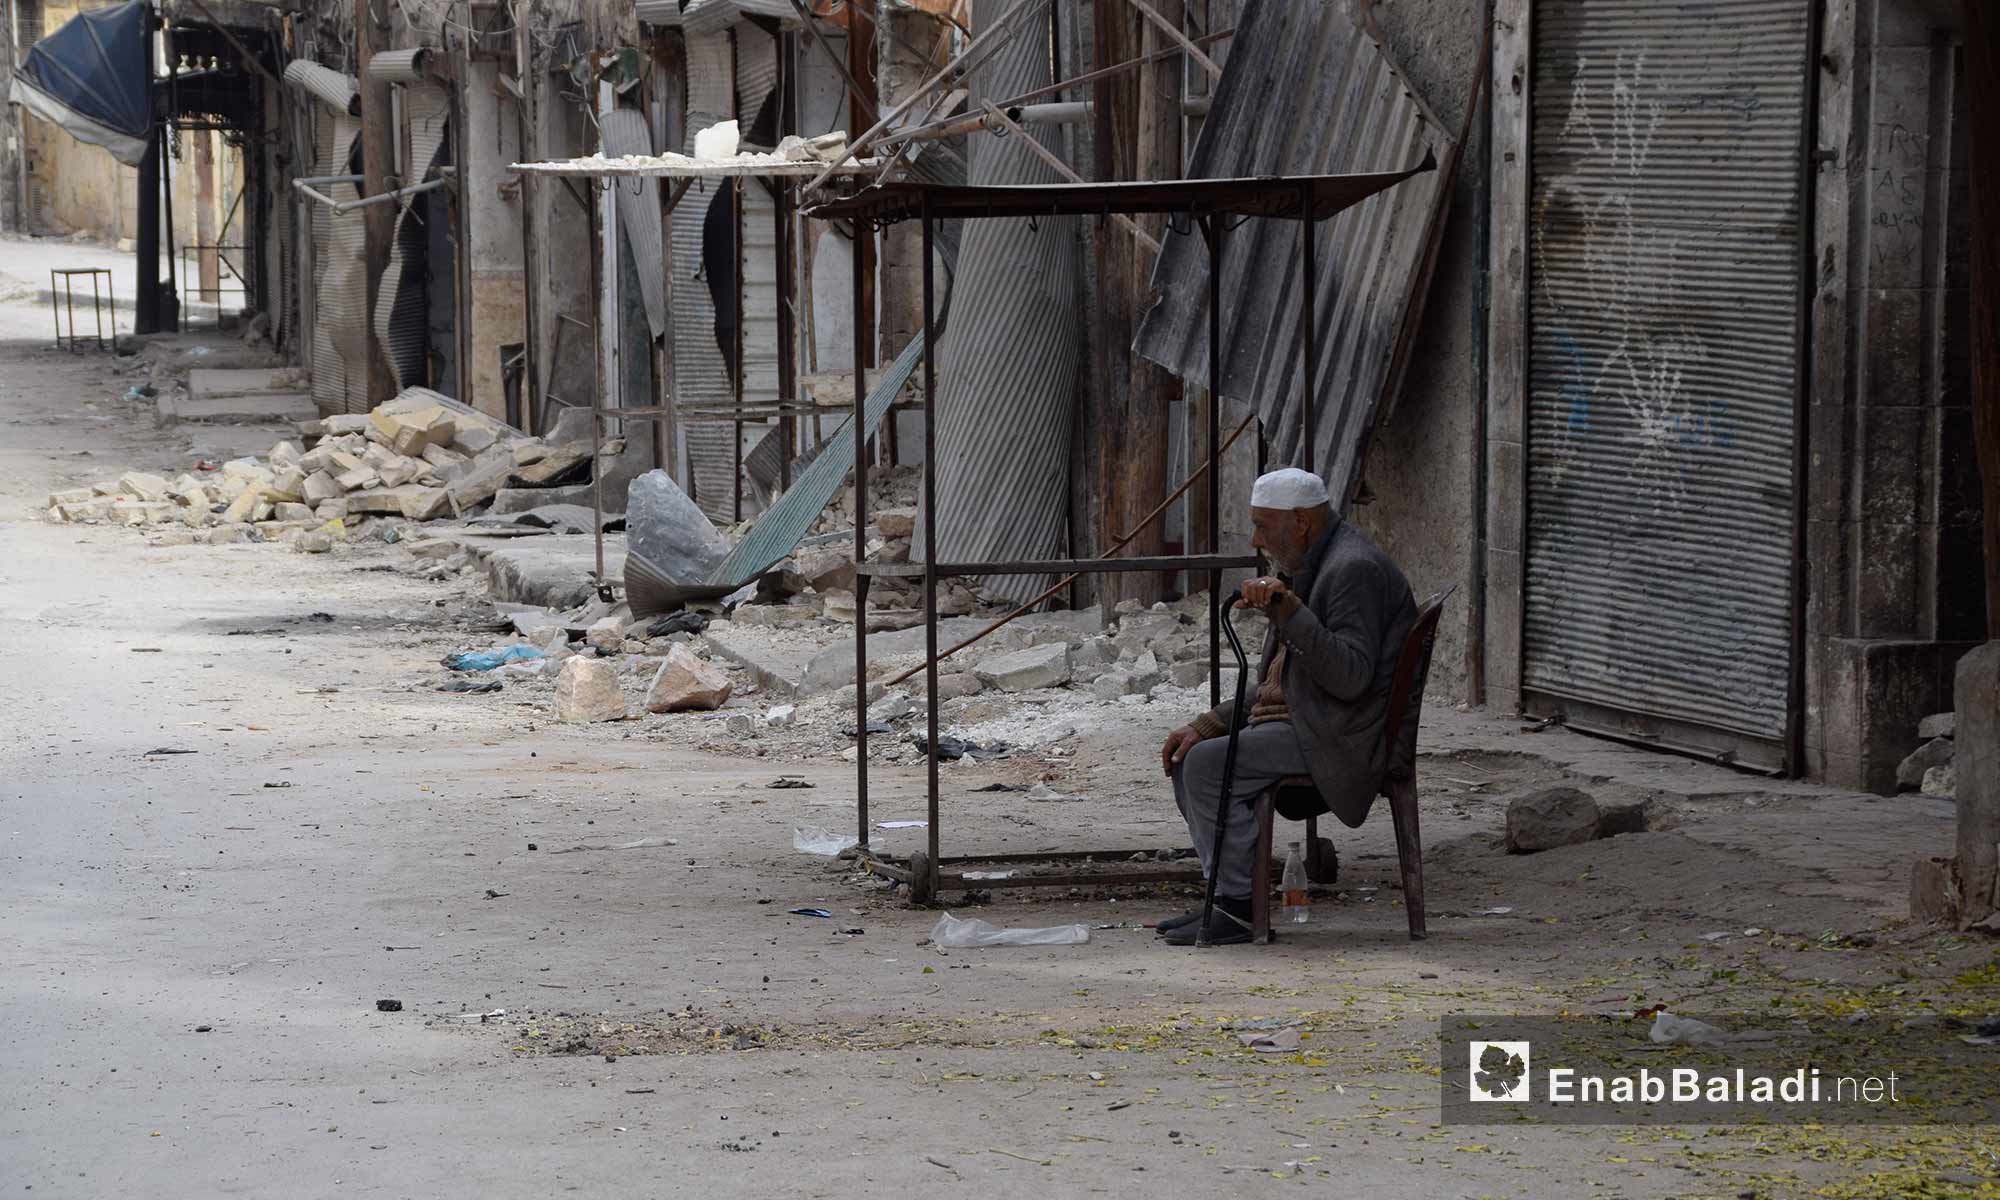 رجل يجلس وسط الدمار داخل حي قرلق في  حلب القديمة التي تسيطر عليها المعارضة، بعد أن هجره أهله وأغلقت محاله التجارية بسبب القصف والحصار - 15 تشرين الثاني 2016 (عنب بلدي)